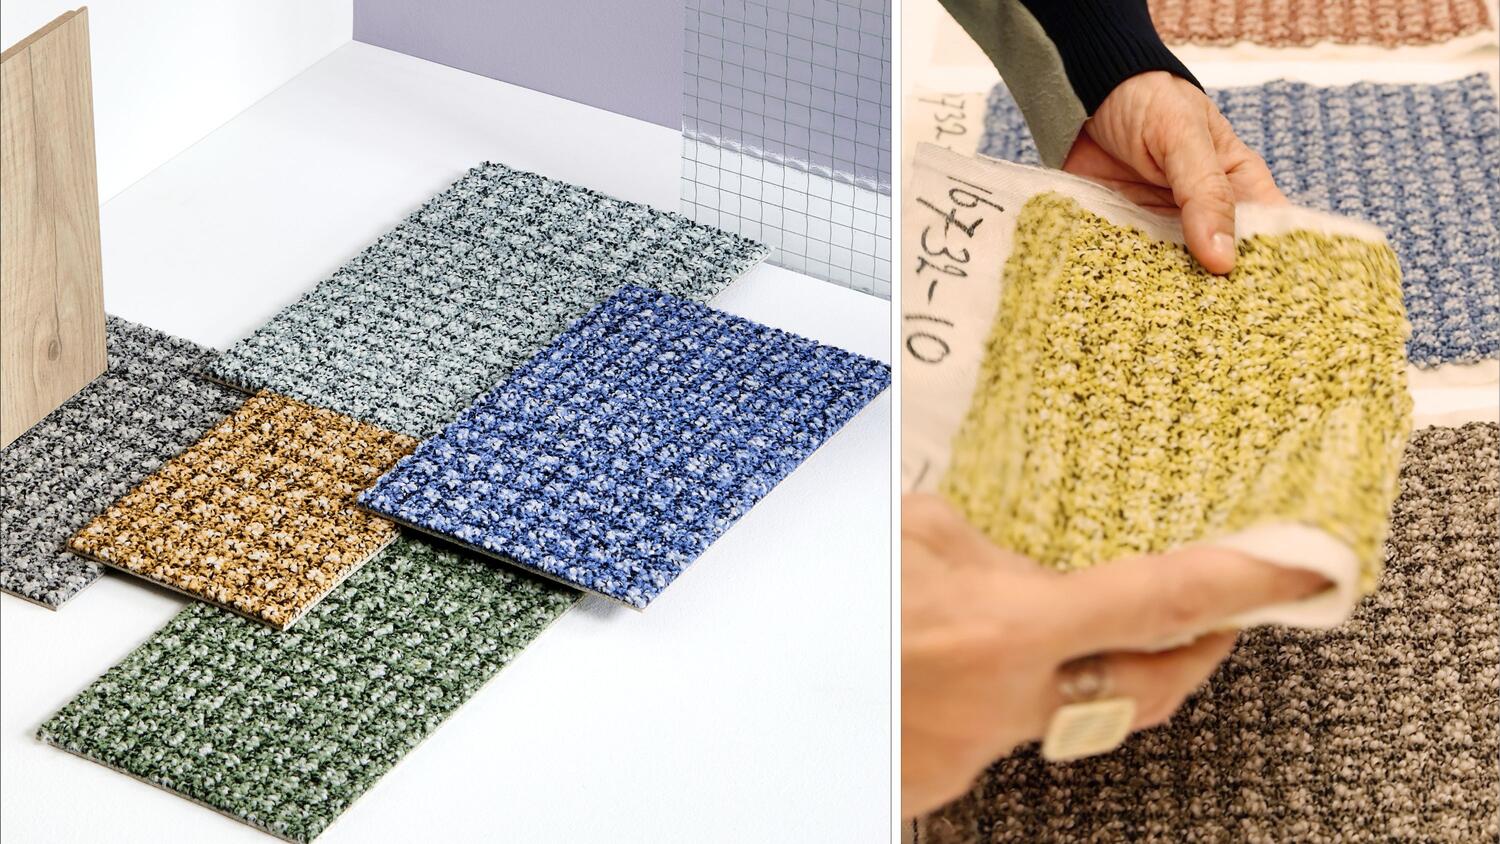 Miękkie i teksturowane płytki dywanowe DESSO autorstwa Patricii Urquioli 